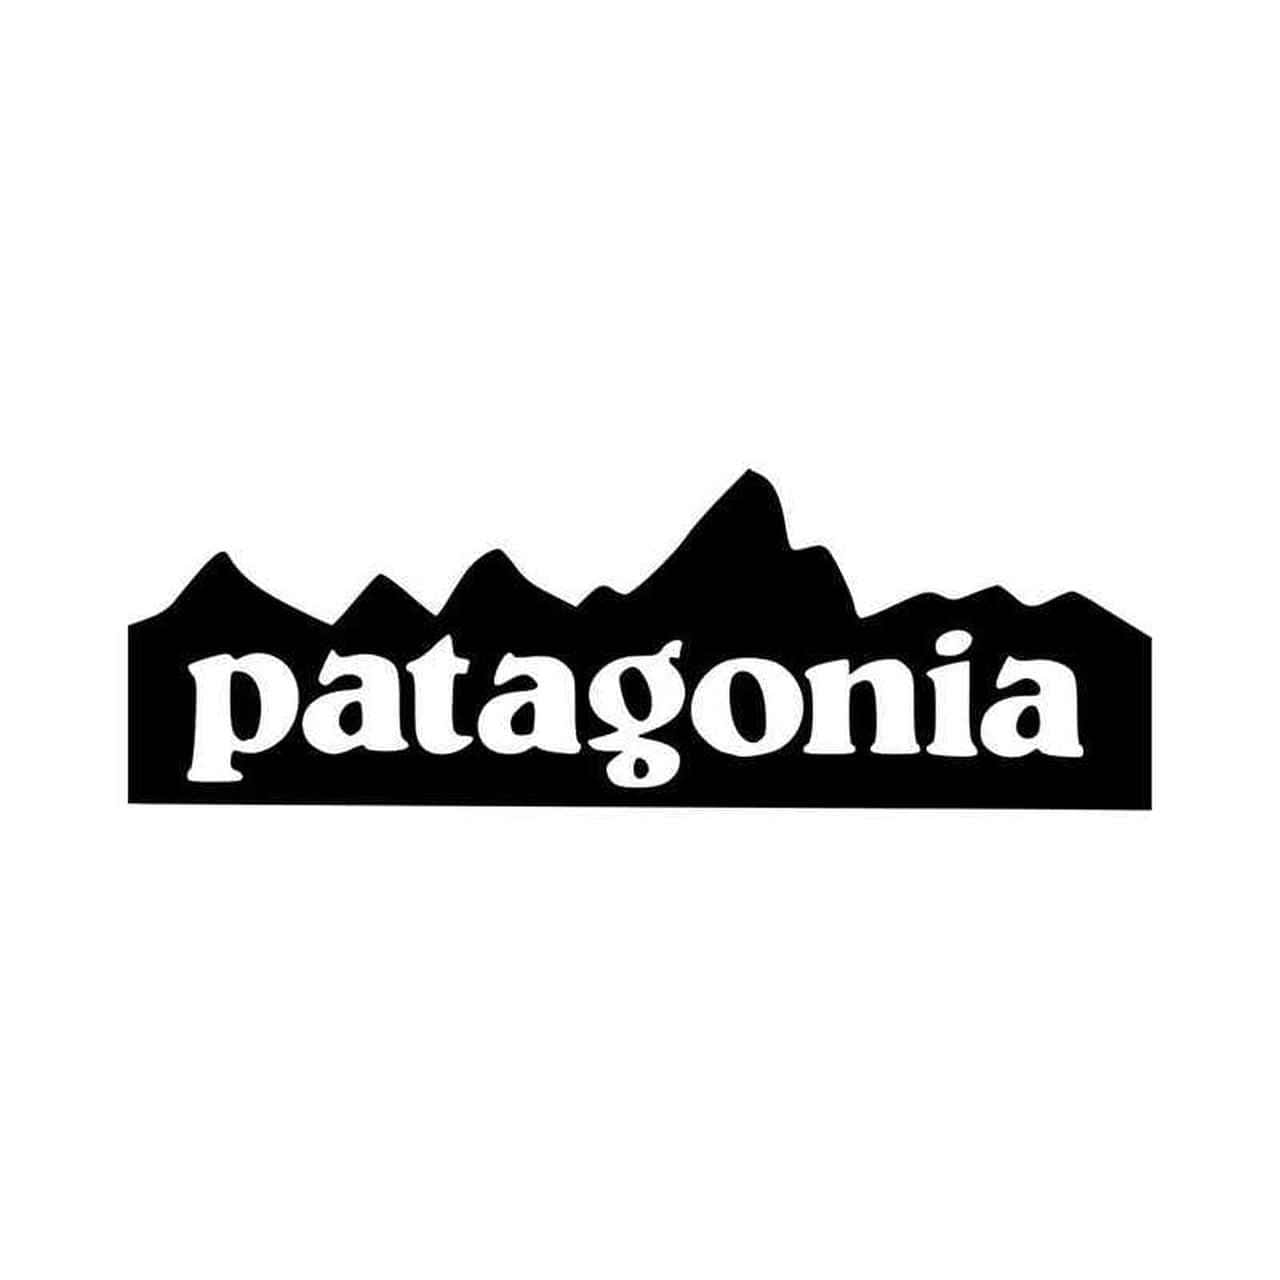 Entziehdich Den Ablenkungen Des Lebens Und Genieße Die Schönheit Patagoniens.